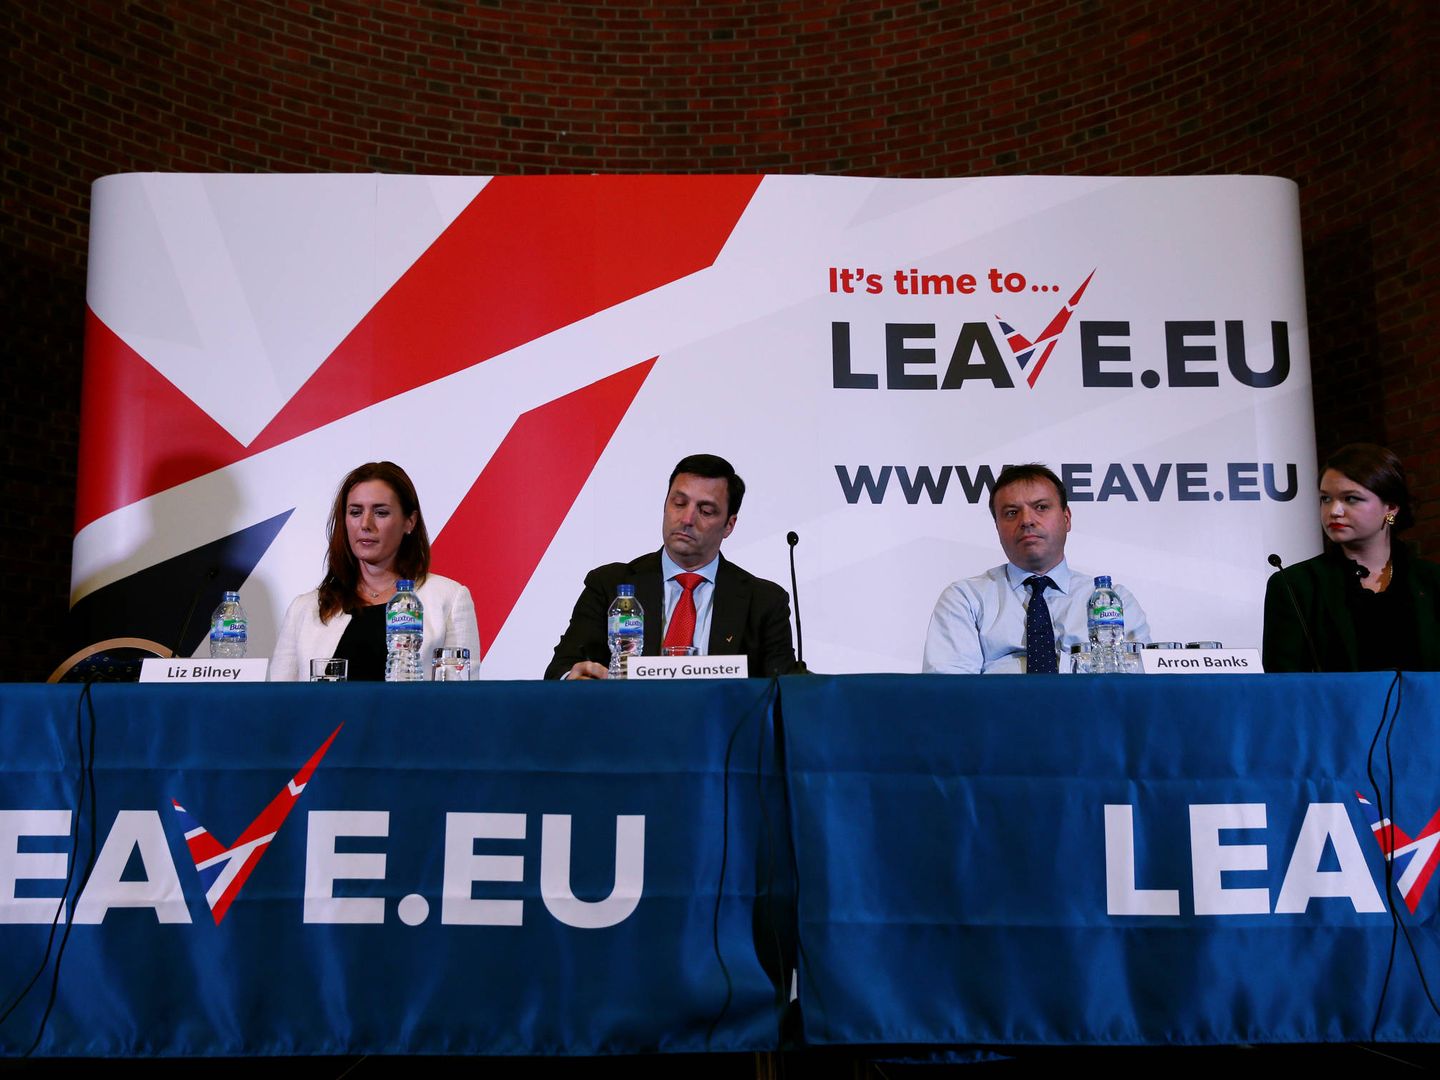 Arron Banks, quien hizo campaña a favor del Brexit, y Gerry Gunster, un estratega de Washington contratado por Leave.UE, durante una comparecencia en Londres. (Reuters)